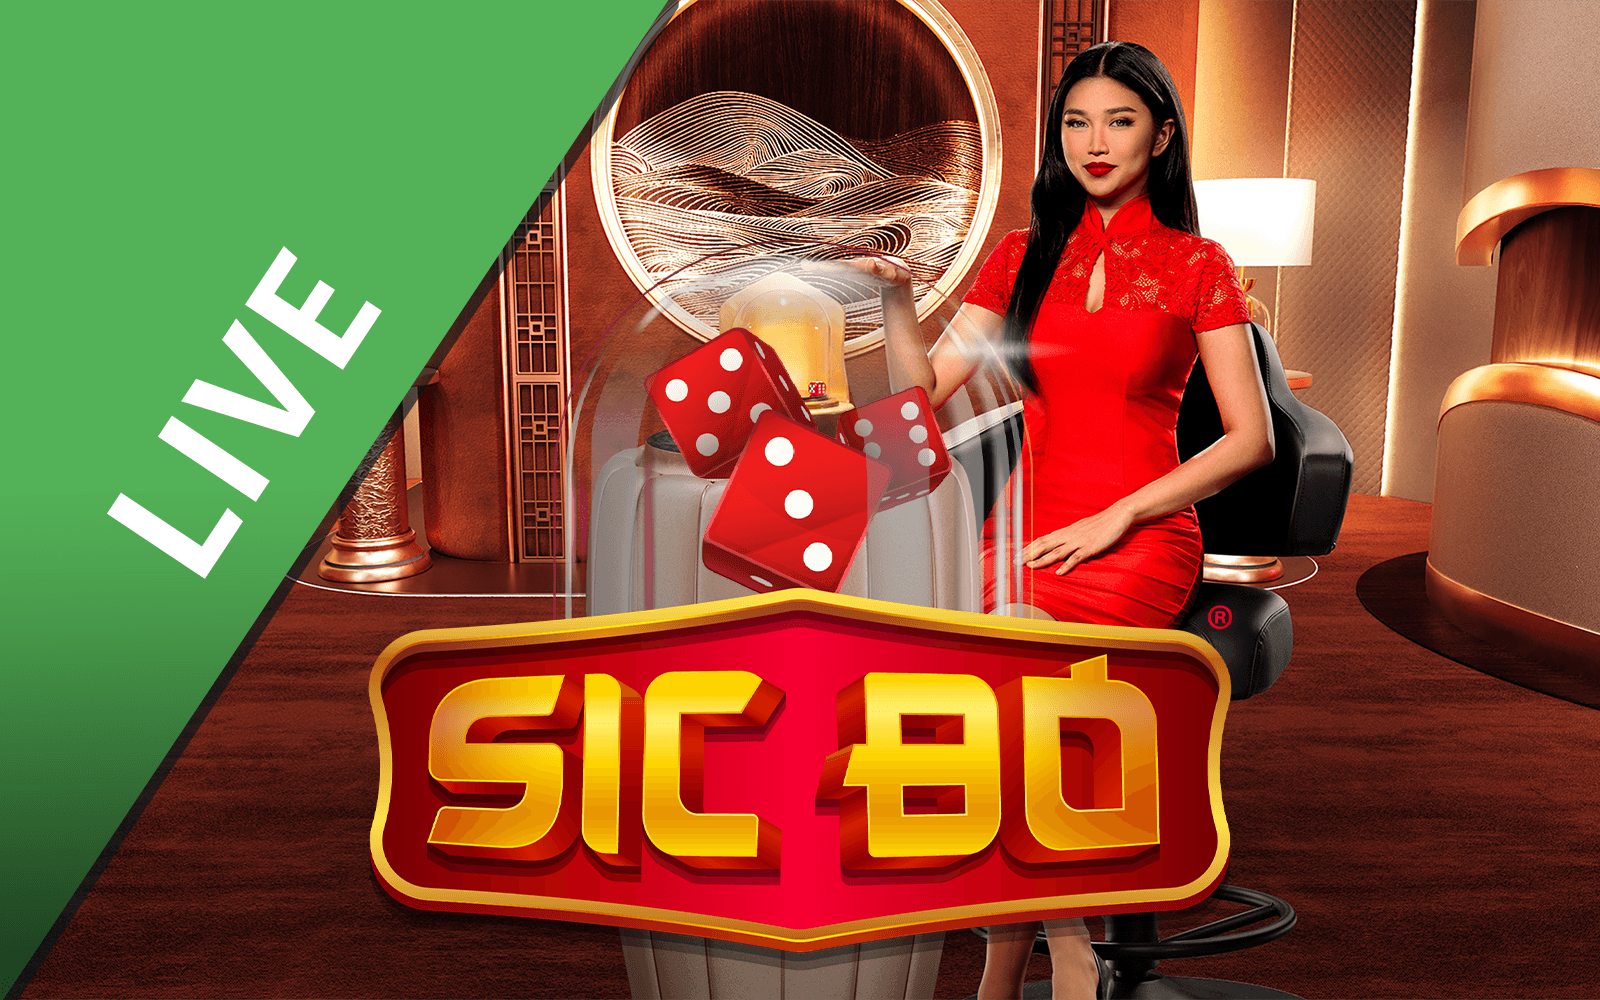 Play Sic Bo™ on Starcasino.be online casino